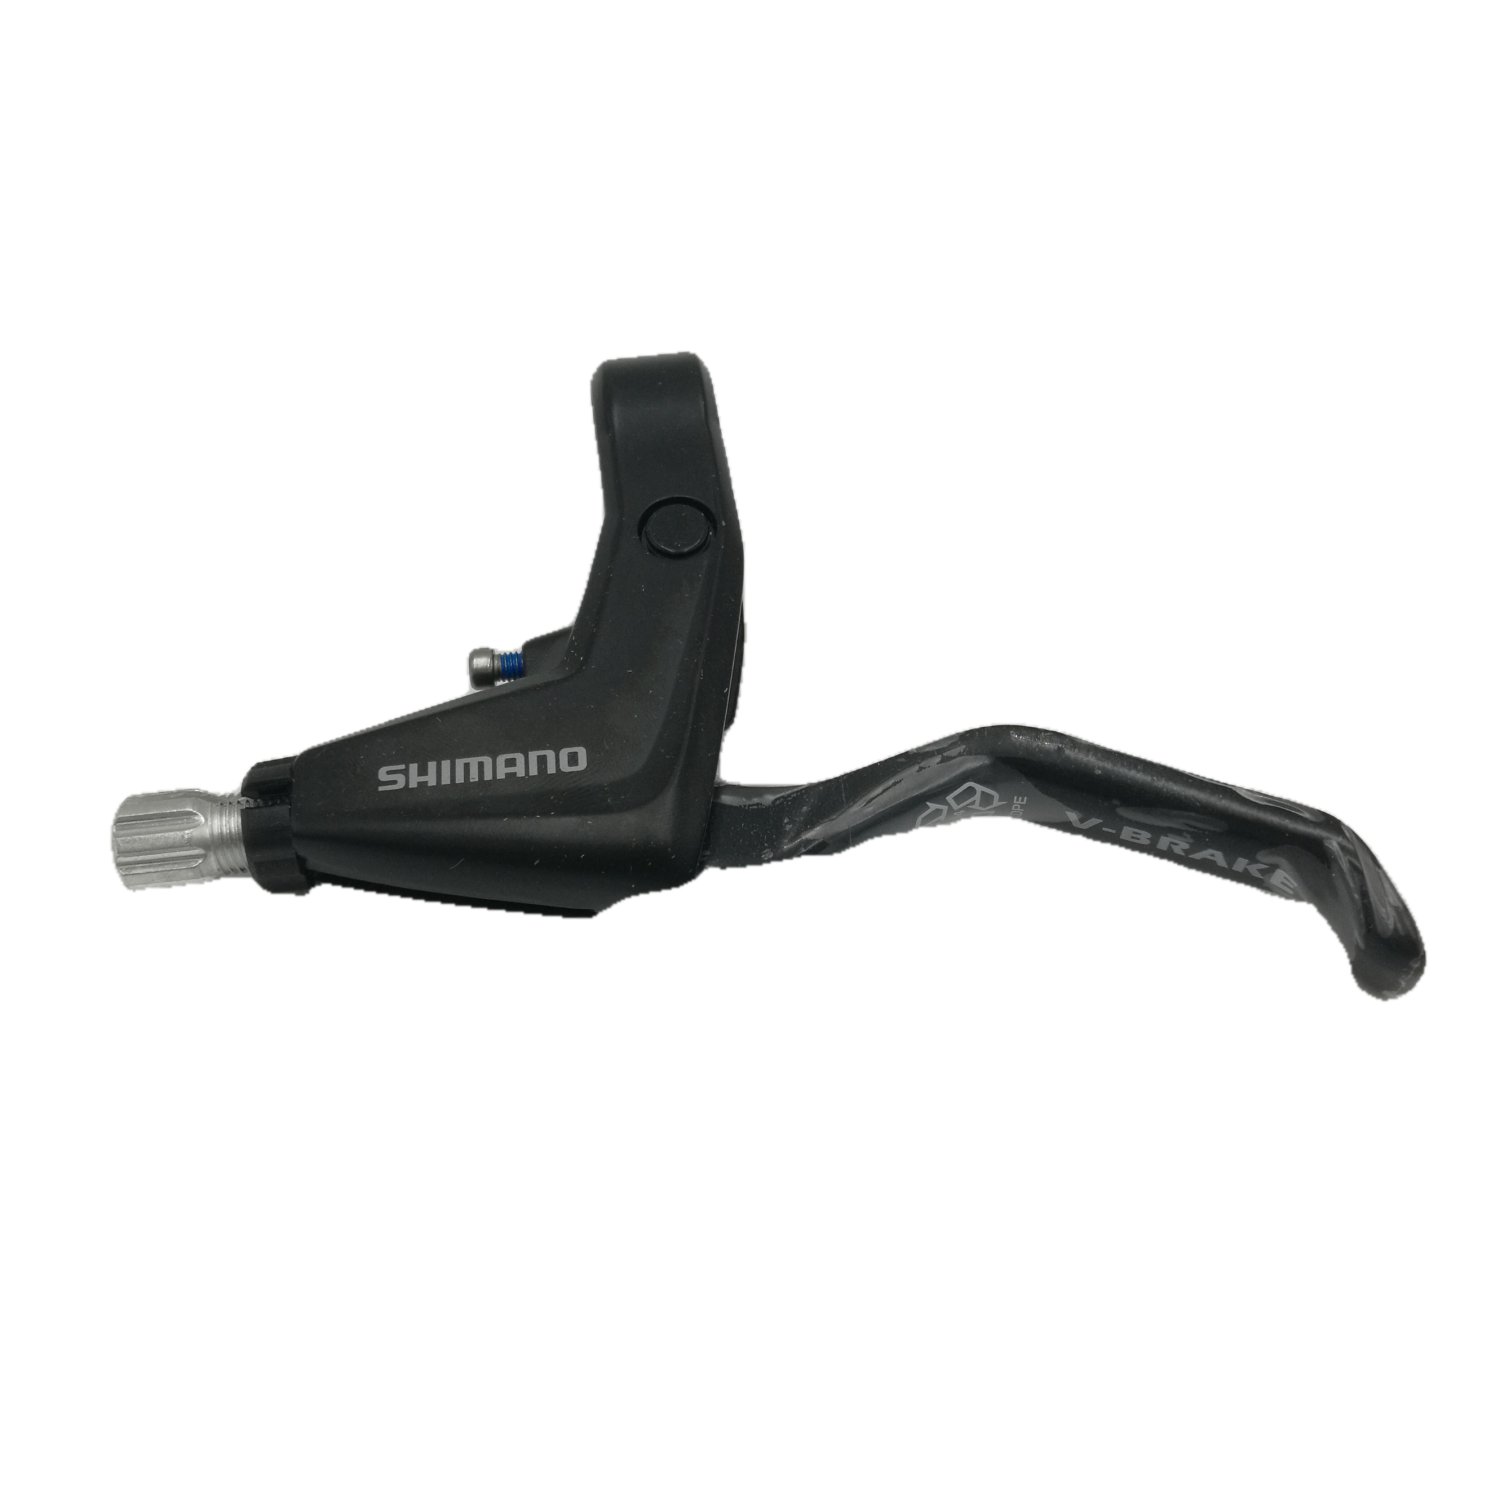 Тормозная ручка Shimano Alivio BL-T4000, левая, черный, v-brake, под 2 пальца, EBLT4000LL купить на ЖДБЗ.ру - фотография № 3